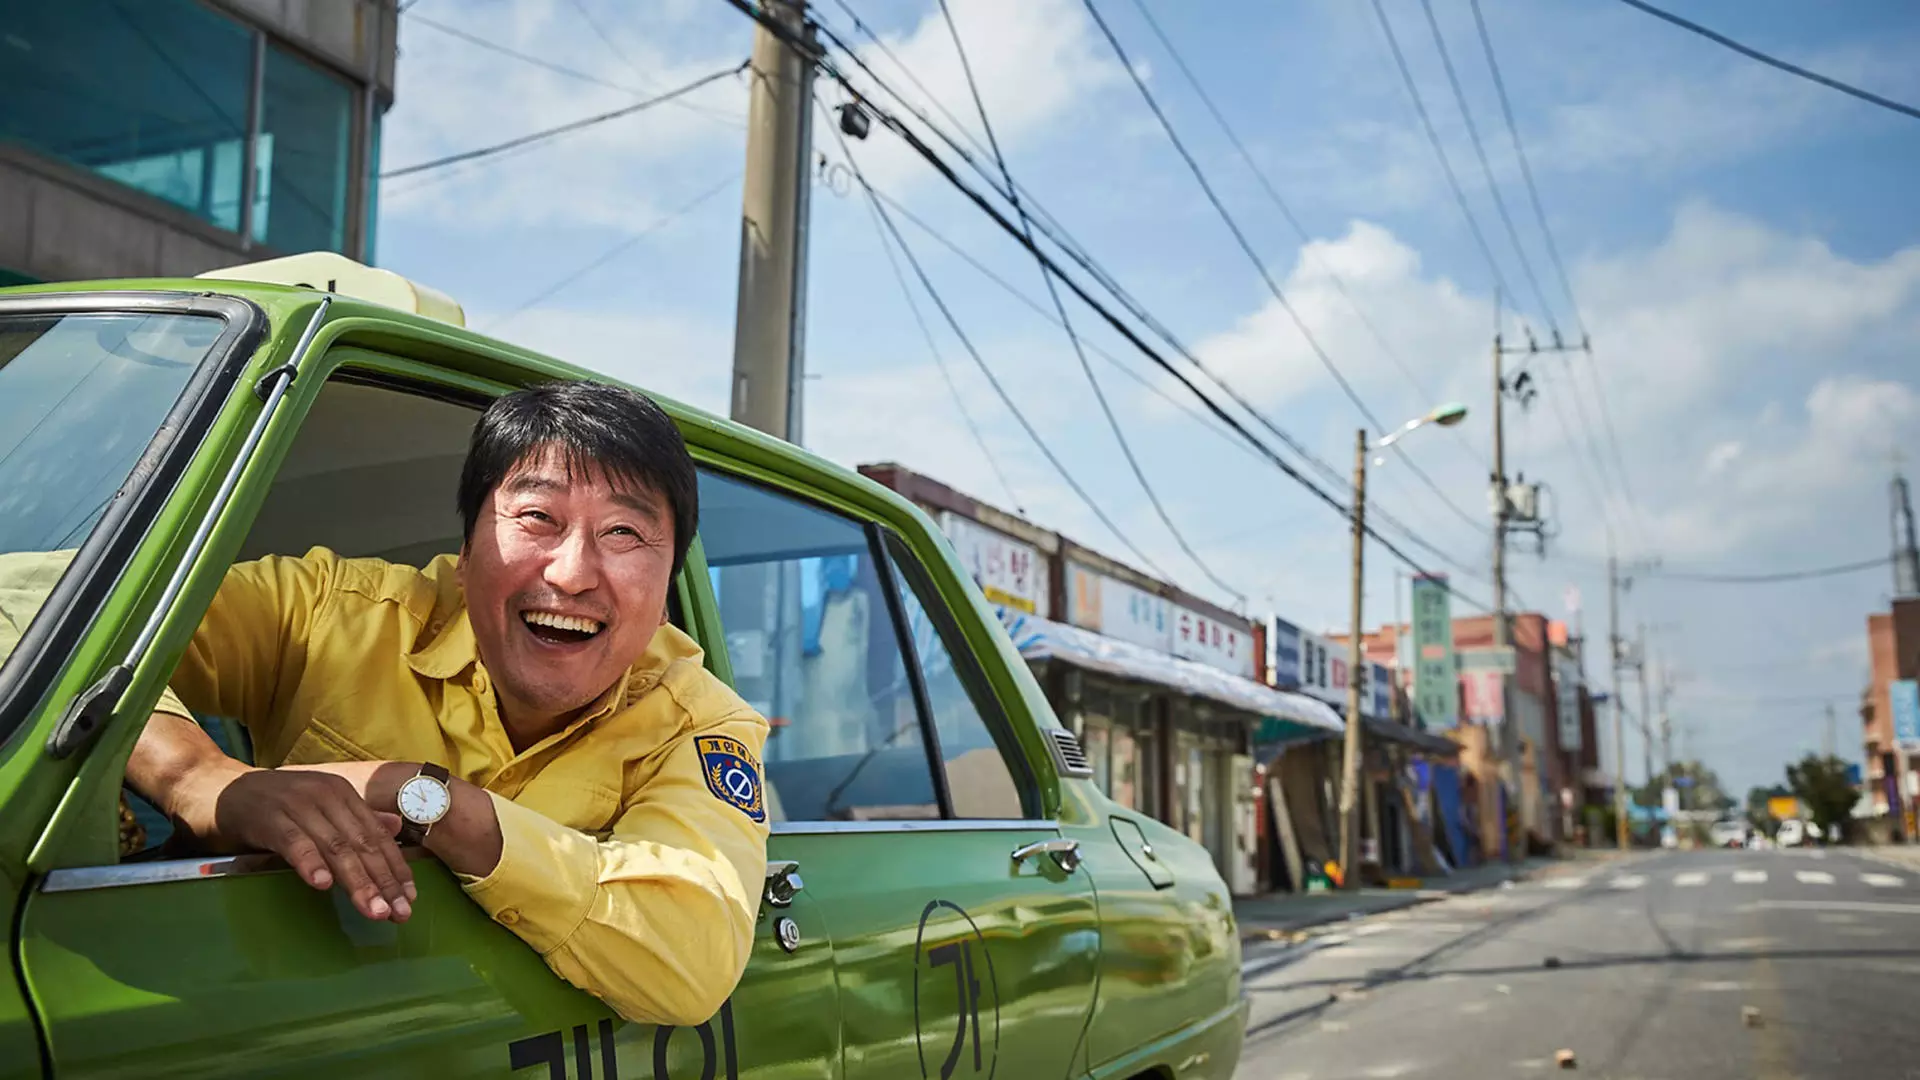 نمایی از فیلم کره ای یک راننده تاکسی ساخته ی جانگ هون